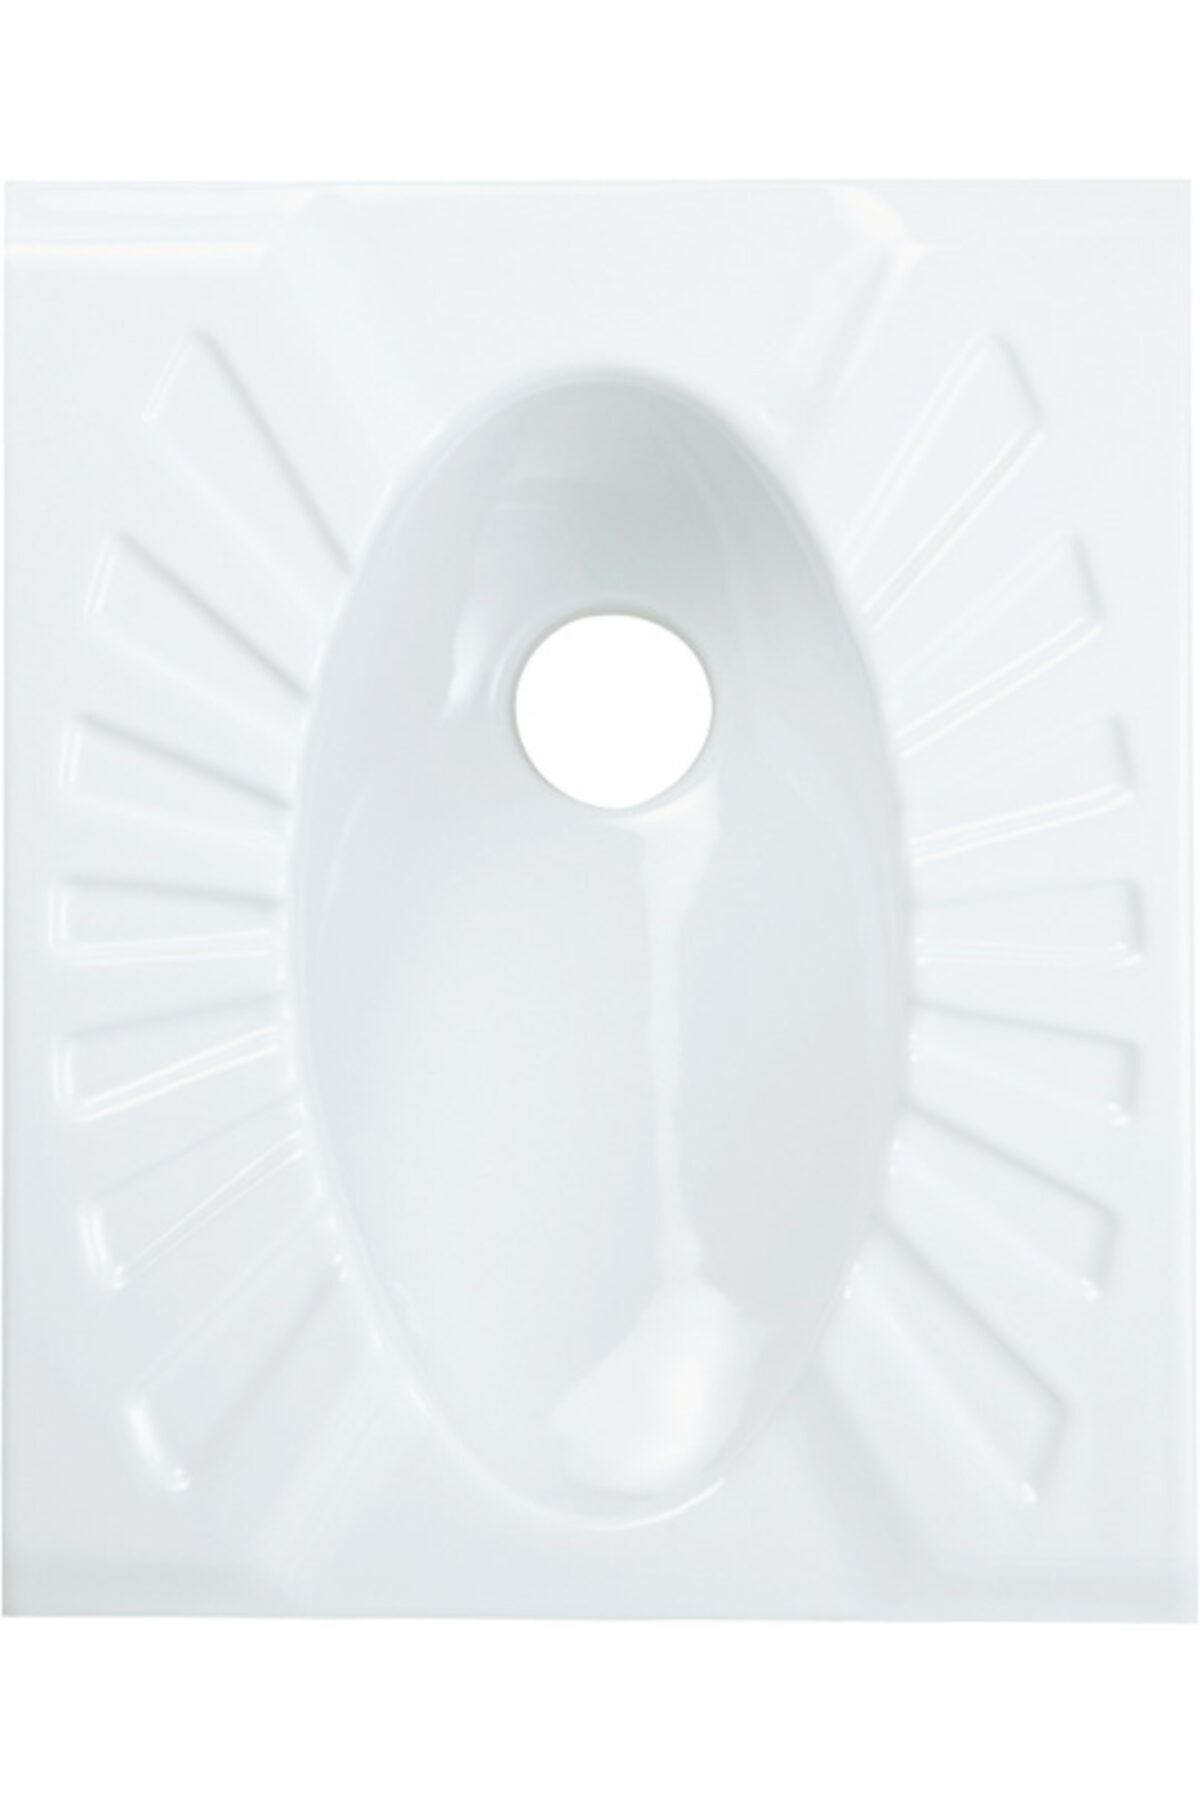 Creavit Tp590 Omega Çevre Yıkamalı Tuvalet Taşı 50x60 Cm Beyaz